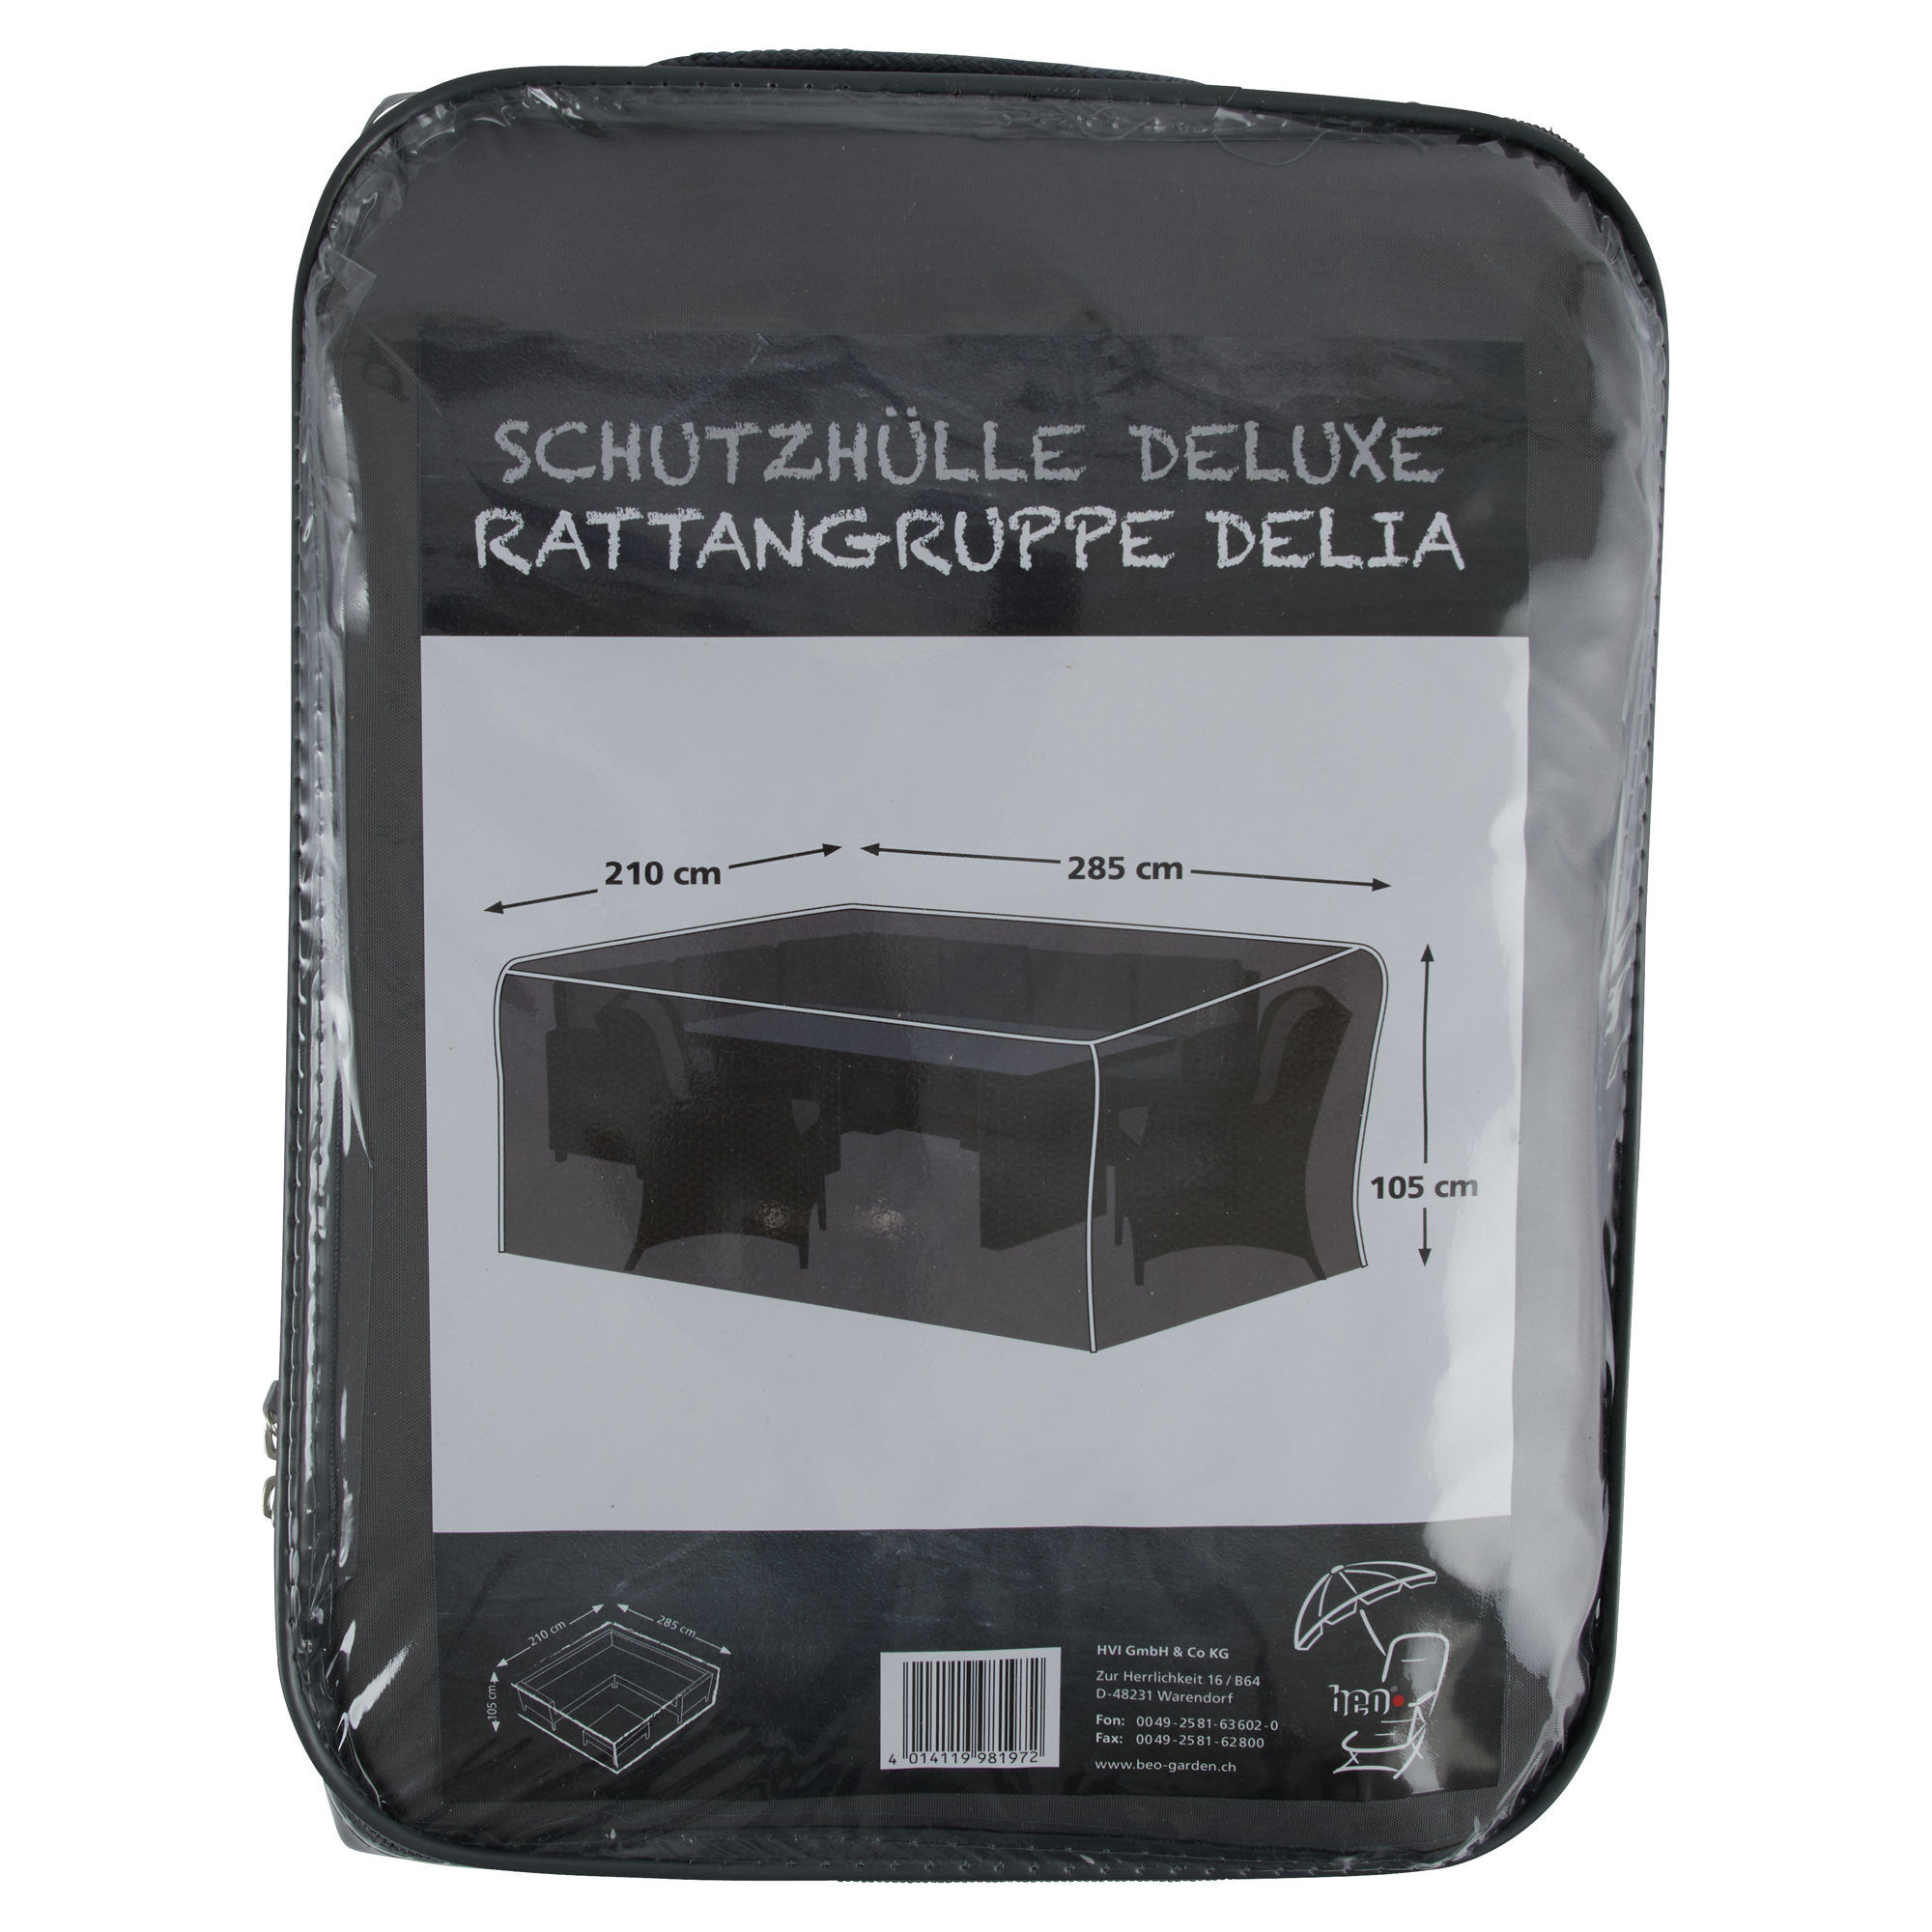 Schutzhülle 'Delia' schwarz 285 x 210 x 105 cm + product picture